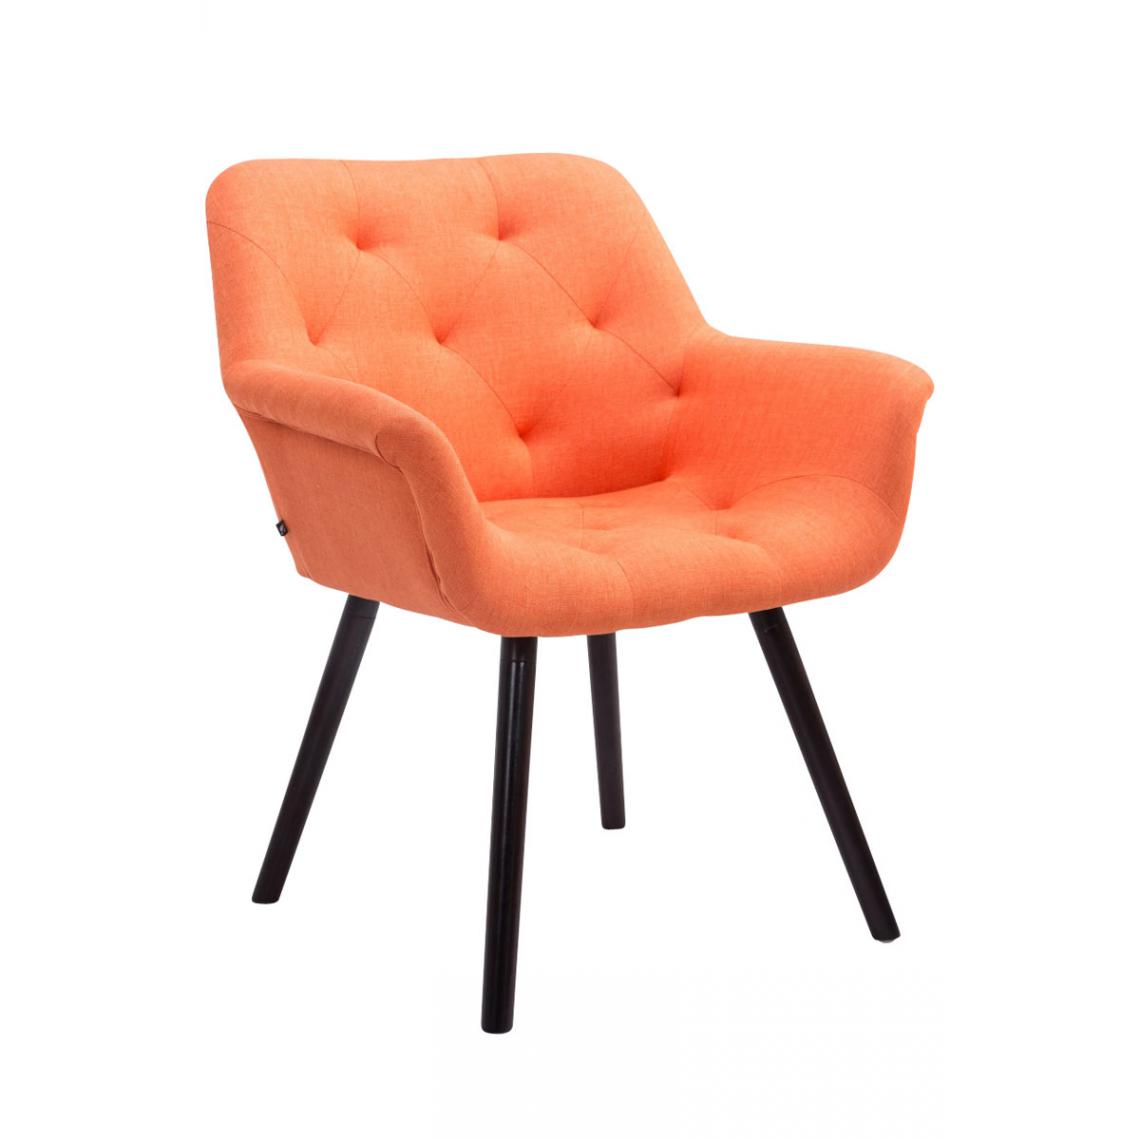 Icaverne - sublime Chaise visiteur collection Khartoum tissu café couleur Orange - Chaises